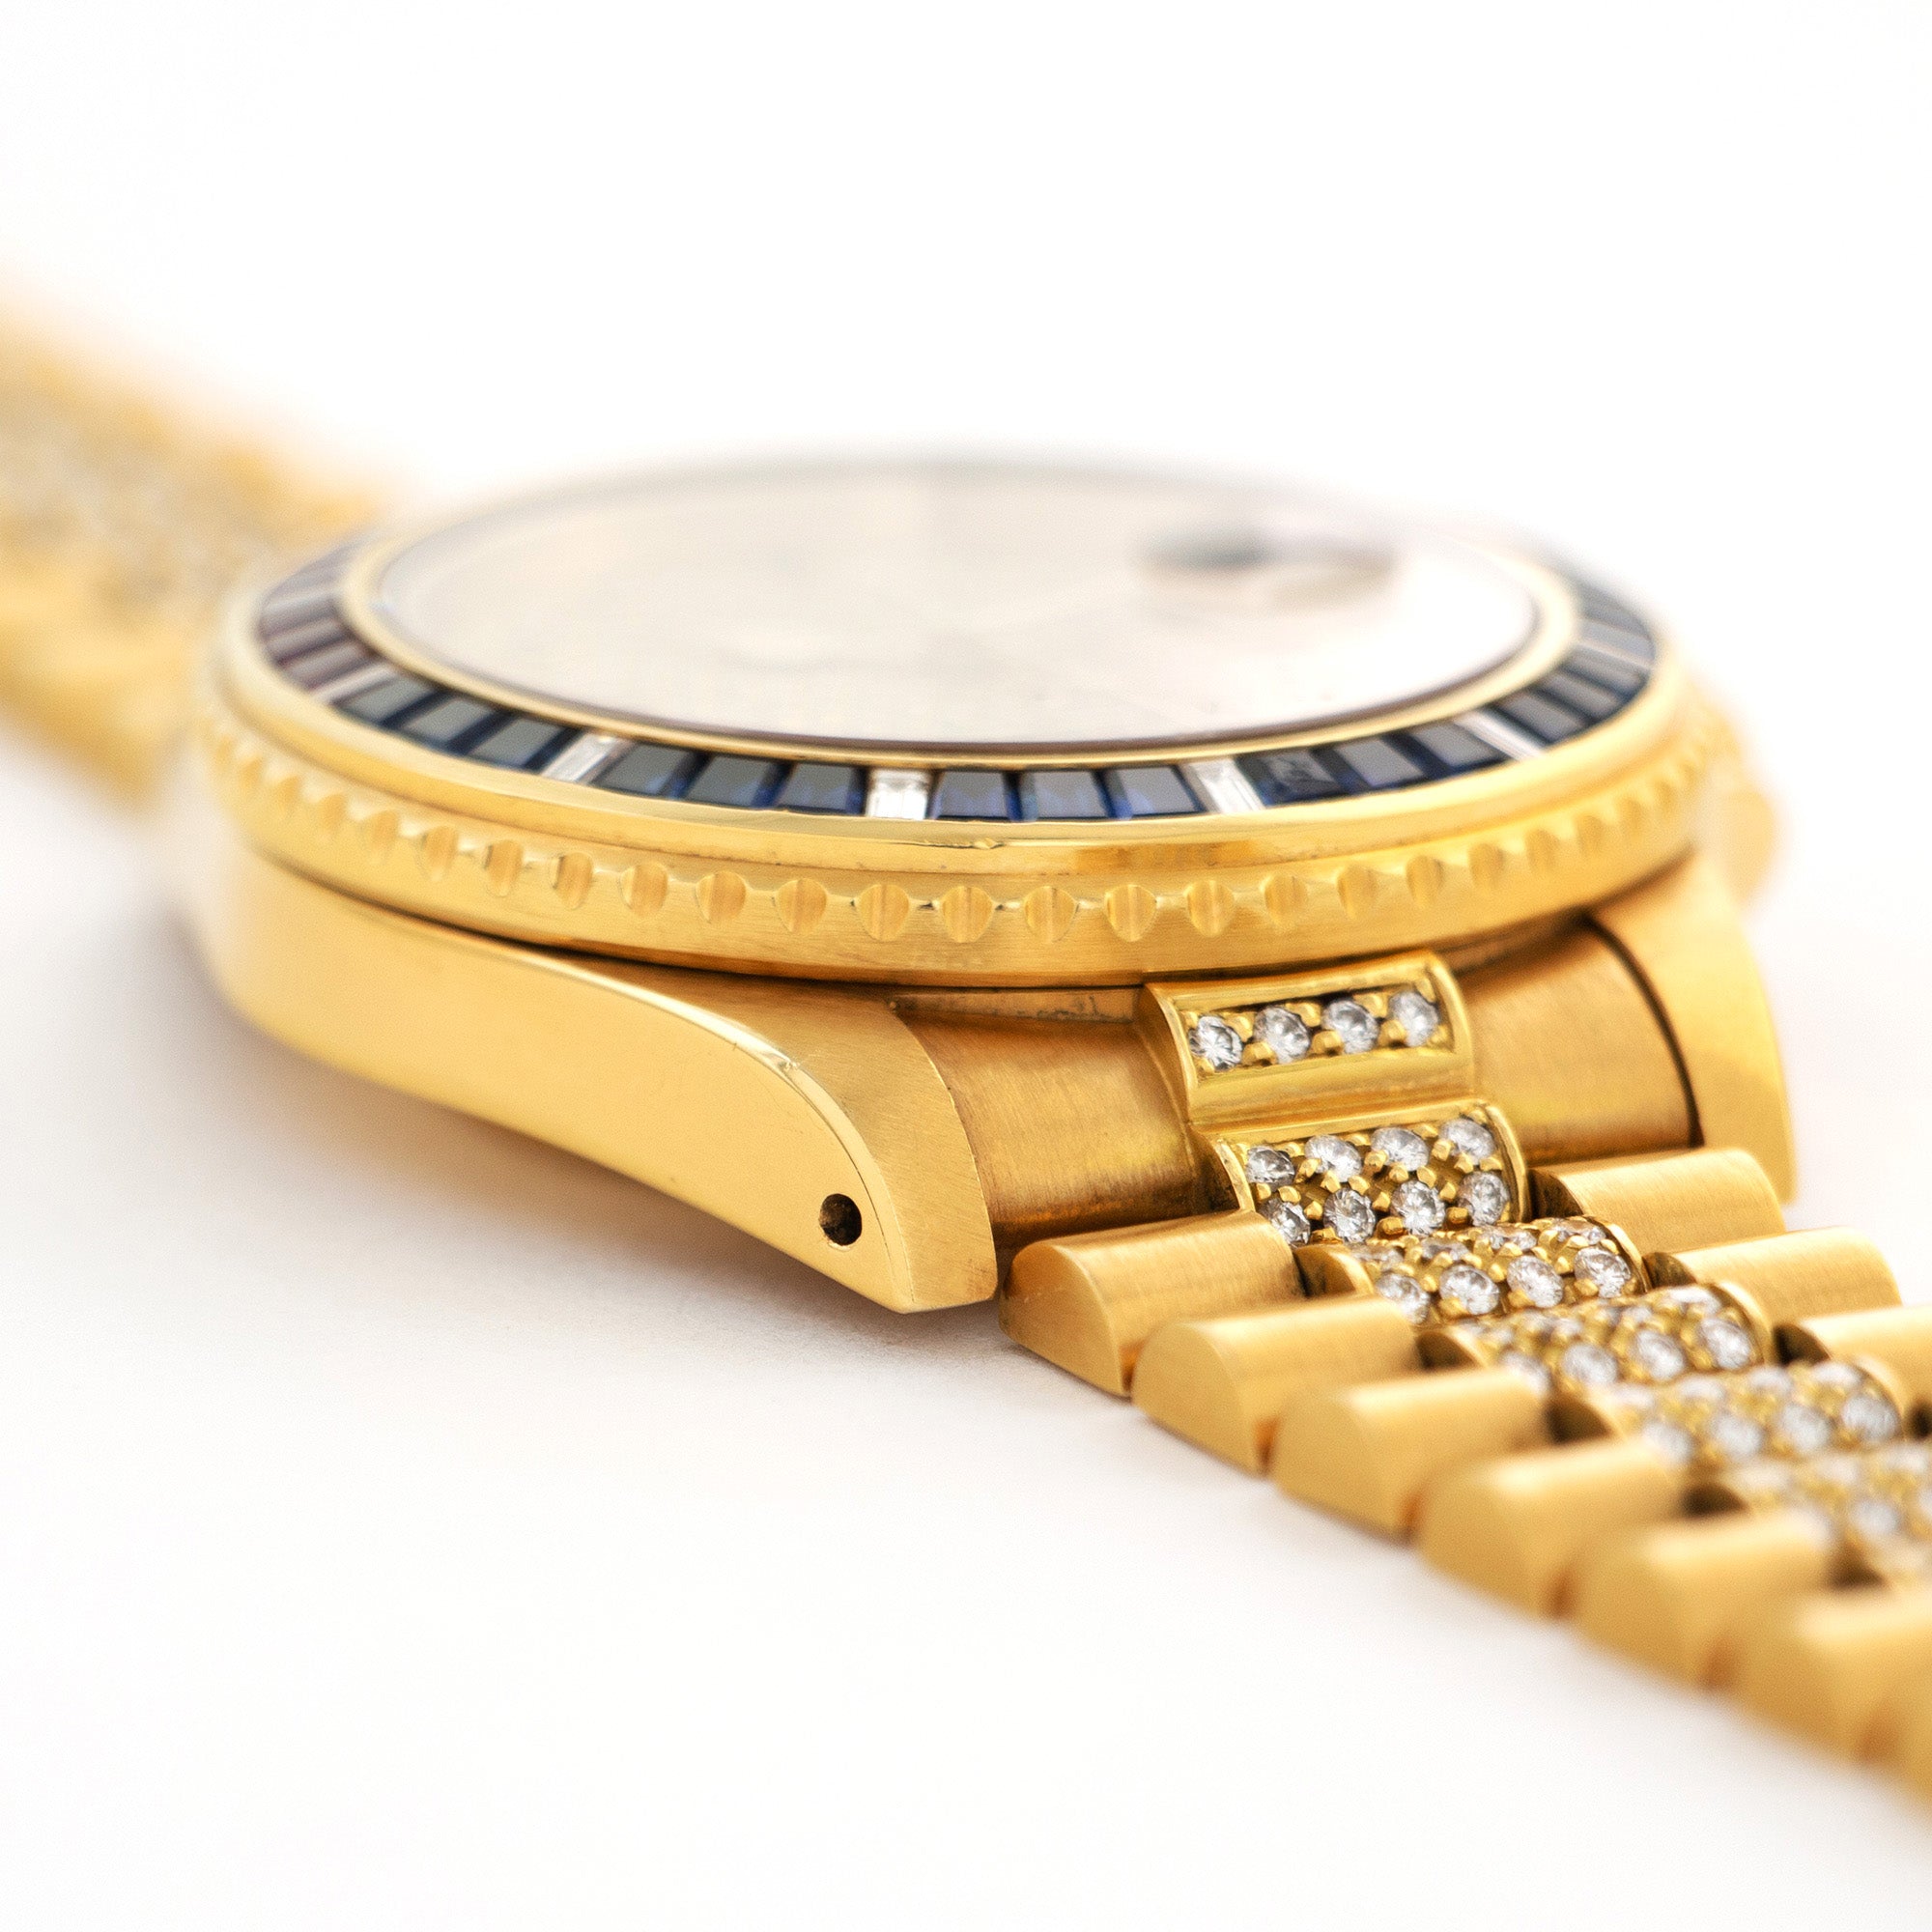 Rolex - Rolex Yellow Gold GMT-Master Watch Ref. 16758 SARU - The Keystone Watches